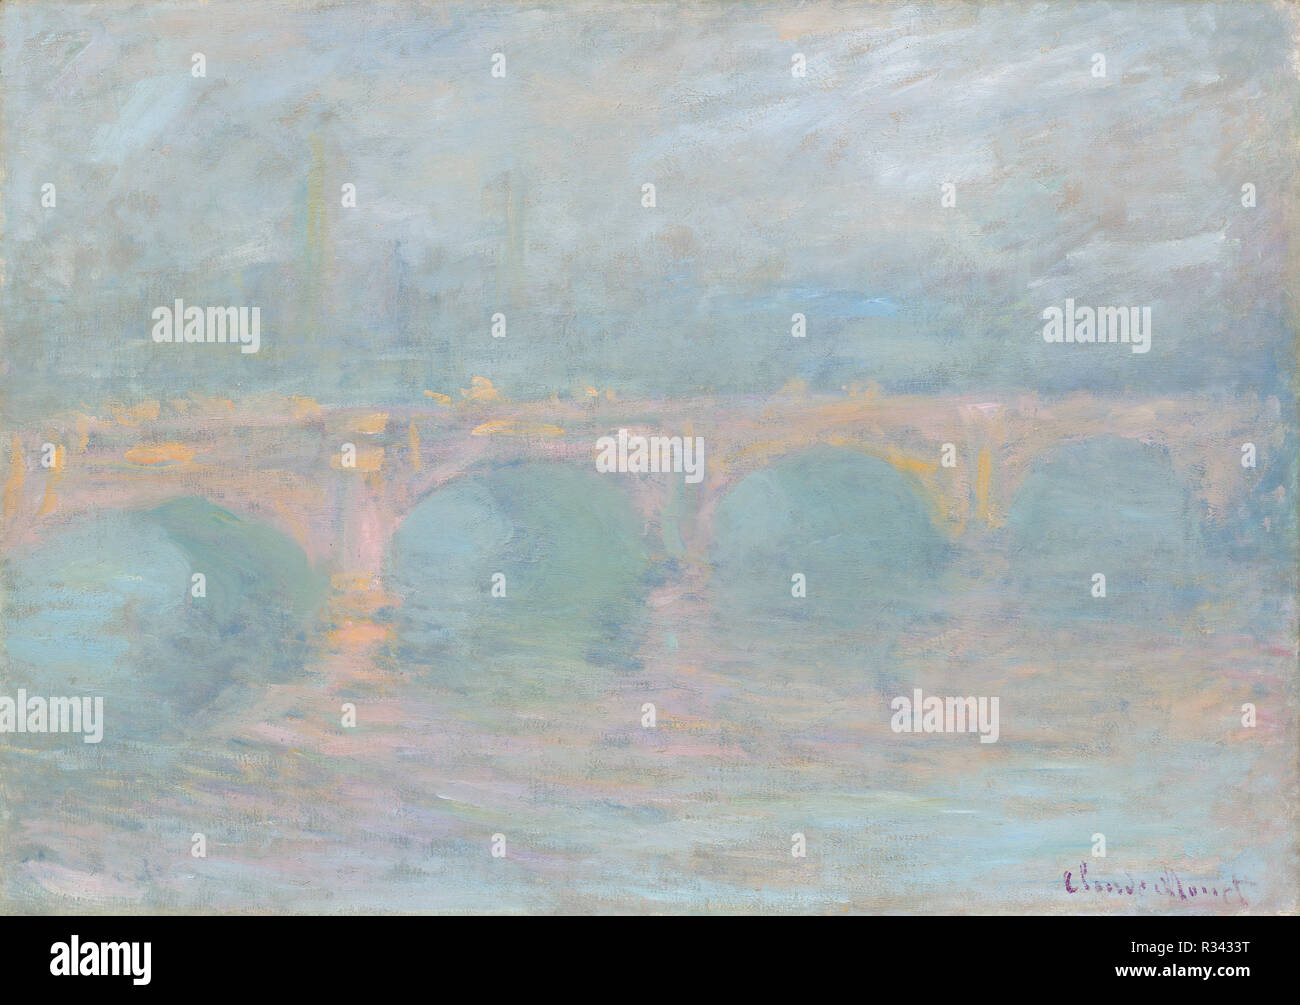 Waterloo Bridge, Londres, au coucher du soleil. En date du : 1904. Dimensions : hors tout : 65,5 x 92,7 cm (25 13/16 x 36 1/2 in.) : 91,1 x 118,1 encadrées cm (35 7/8 x 46 1/2 in.). Médium : Huile sur toile. Musée : National Gallery of Art, Washington DC. Auteur : Claude Monet. Banque D'Images